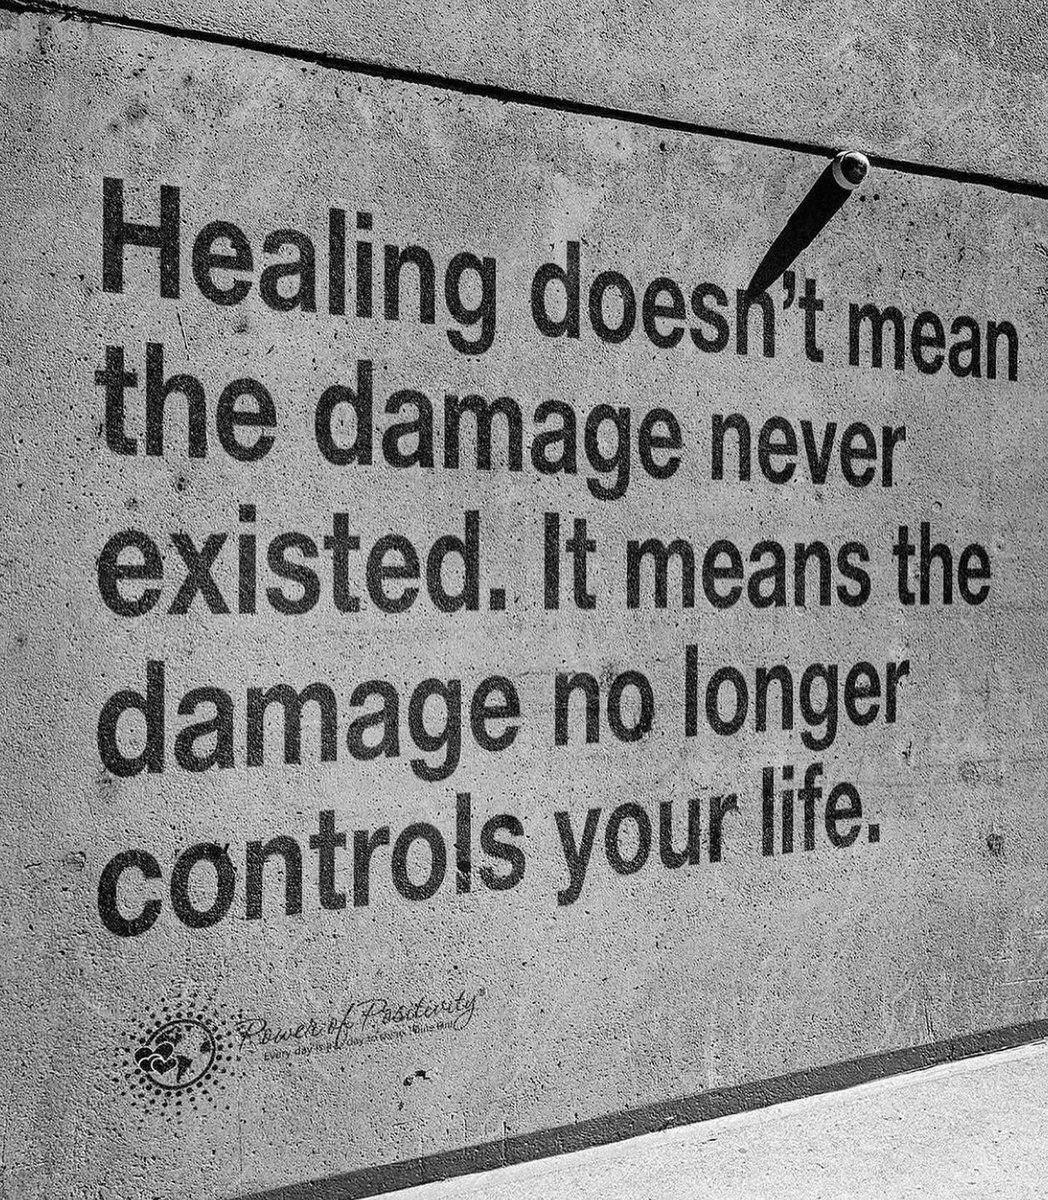 #healing